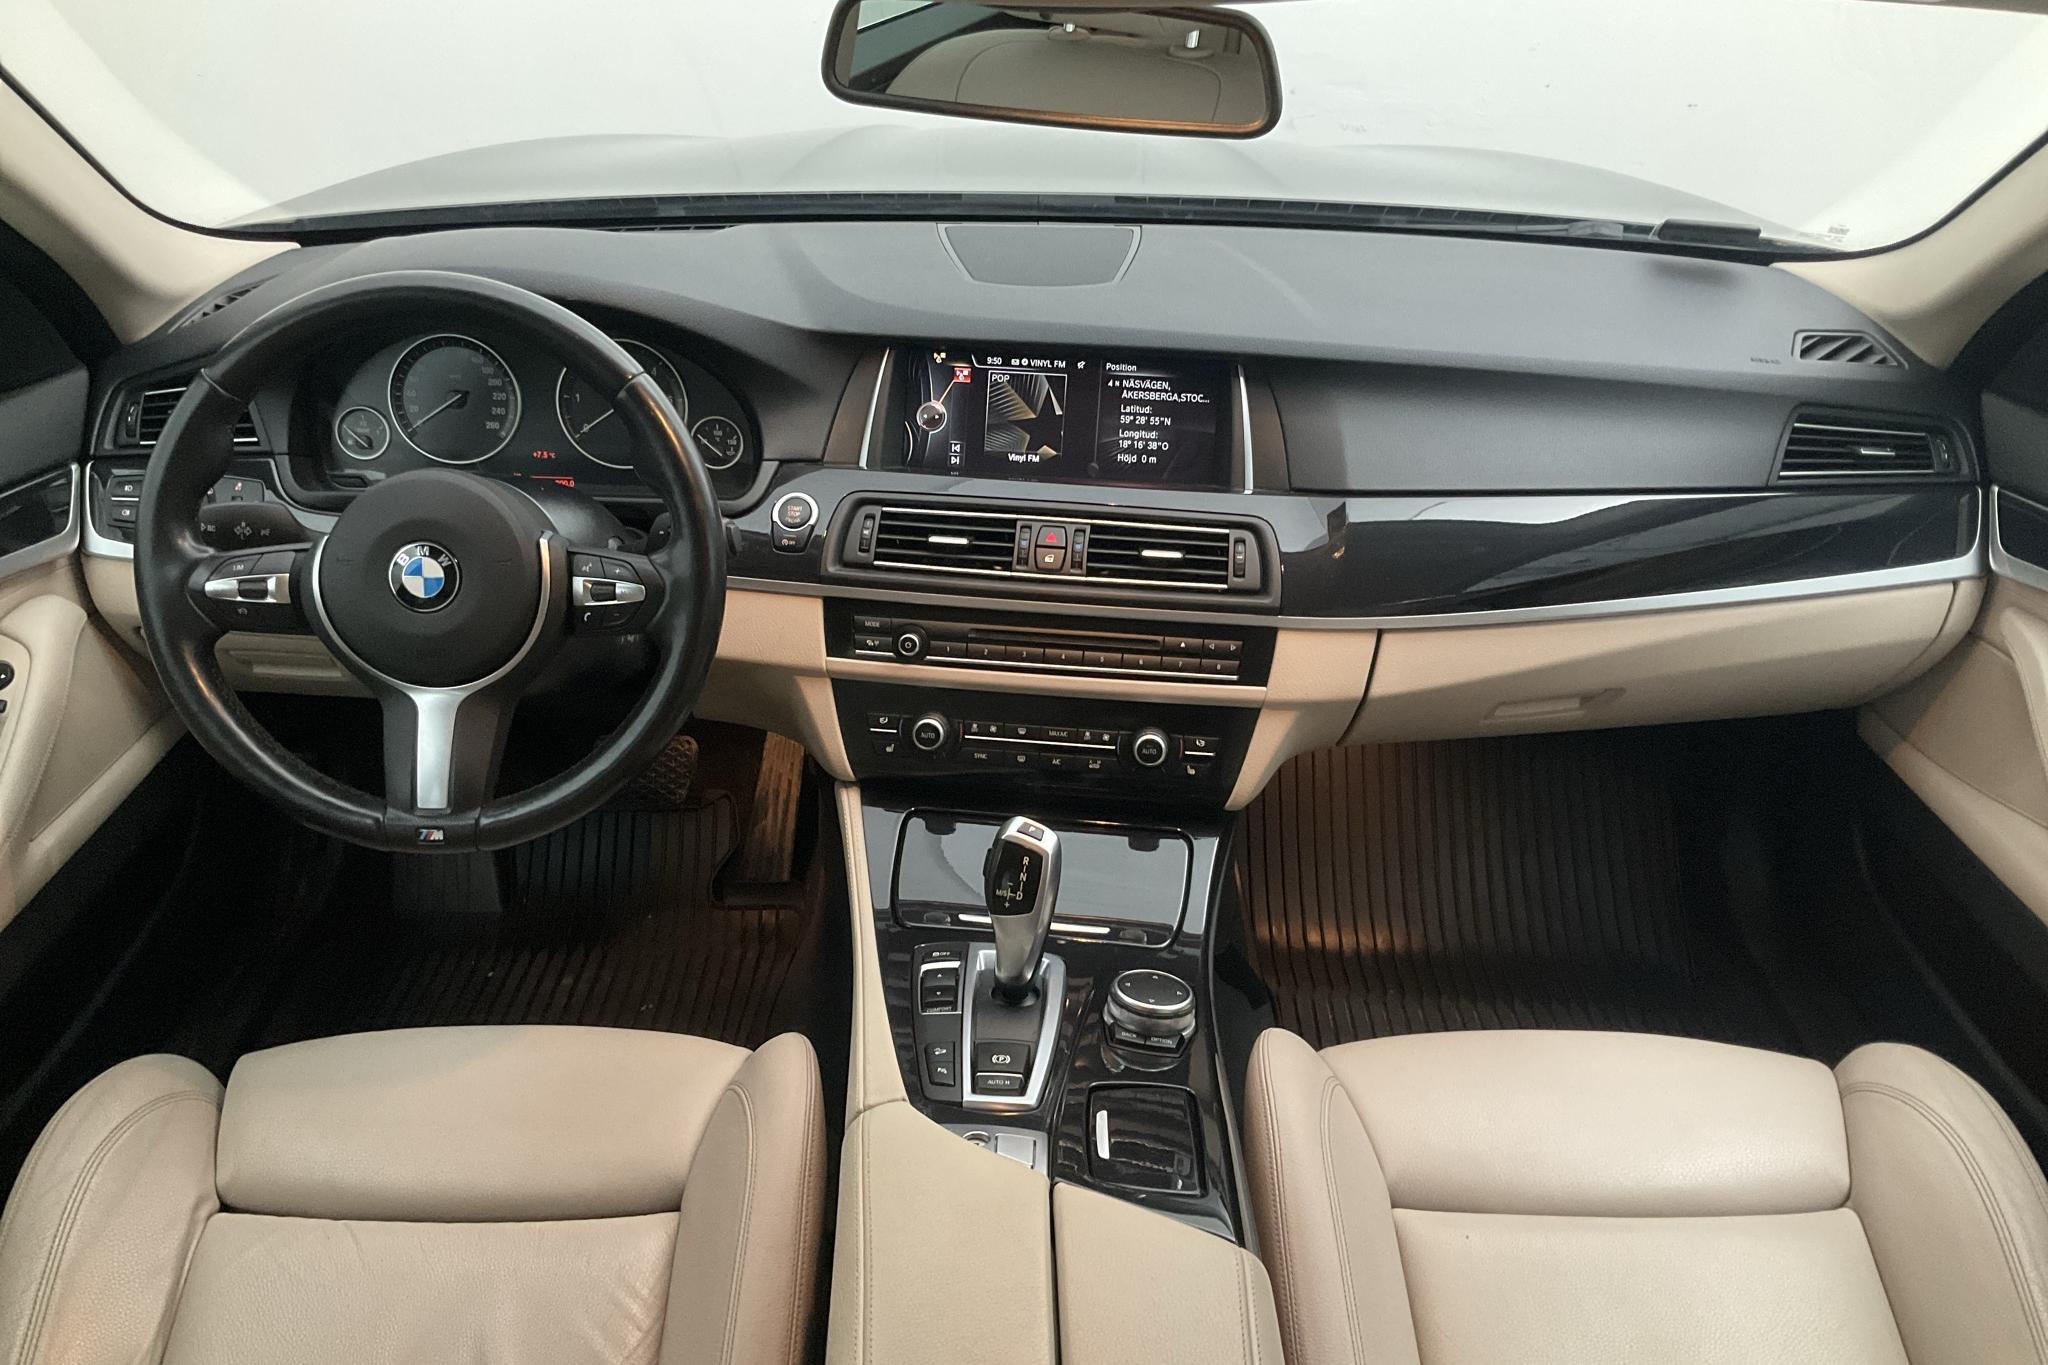 BMW 520d xDrive Touring, F11 (190hk) - 130 800 km - Automatic - brown - 2017